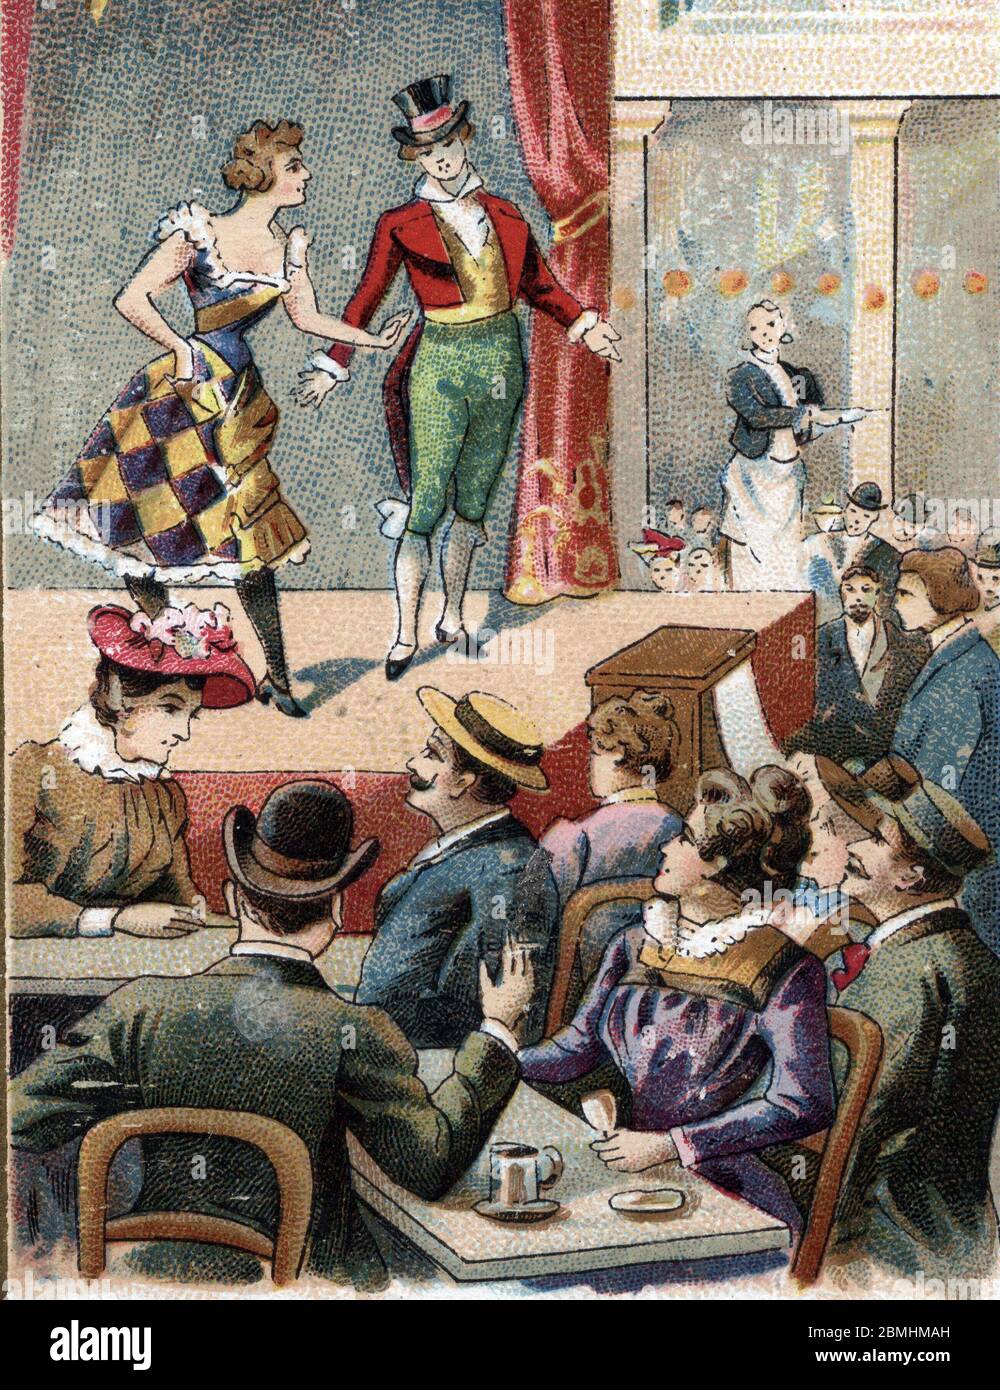 'Spectacle dans un cafe-concert populaire, Paris 19eme siecle' (Show in a popular Cafe-chantant, musical establishment, Paris, 19th century) Chromolit Stock Photo